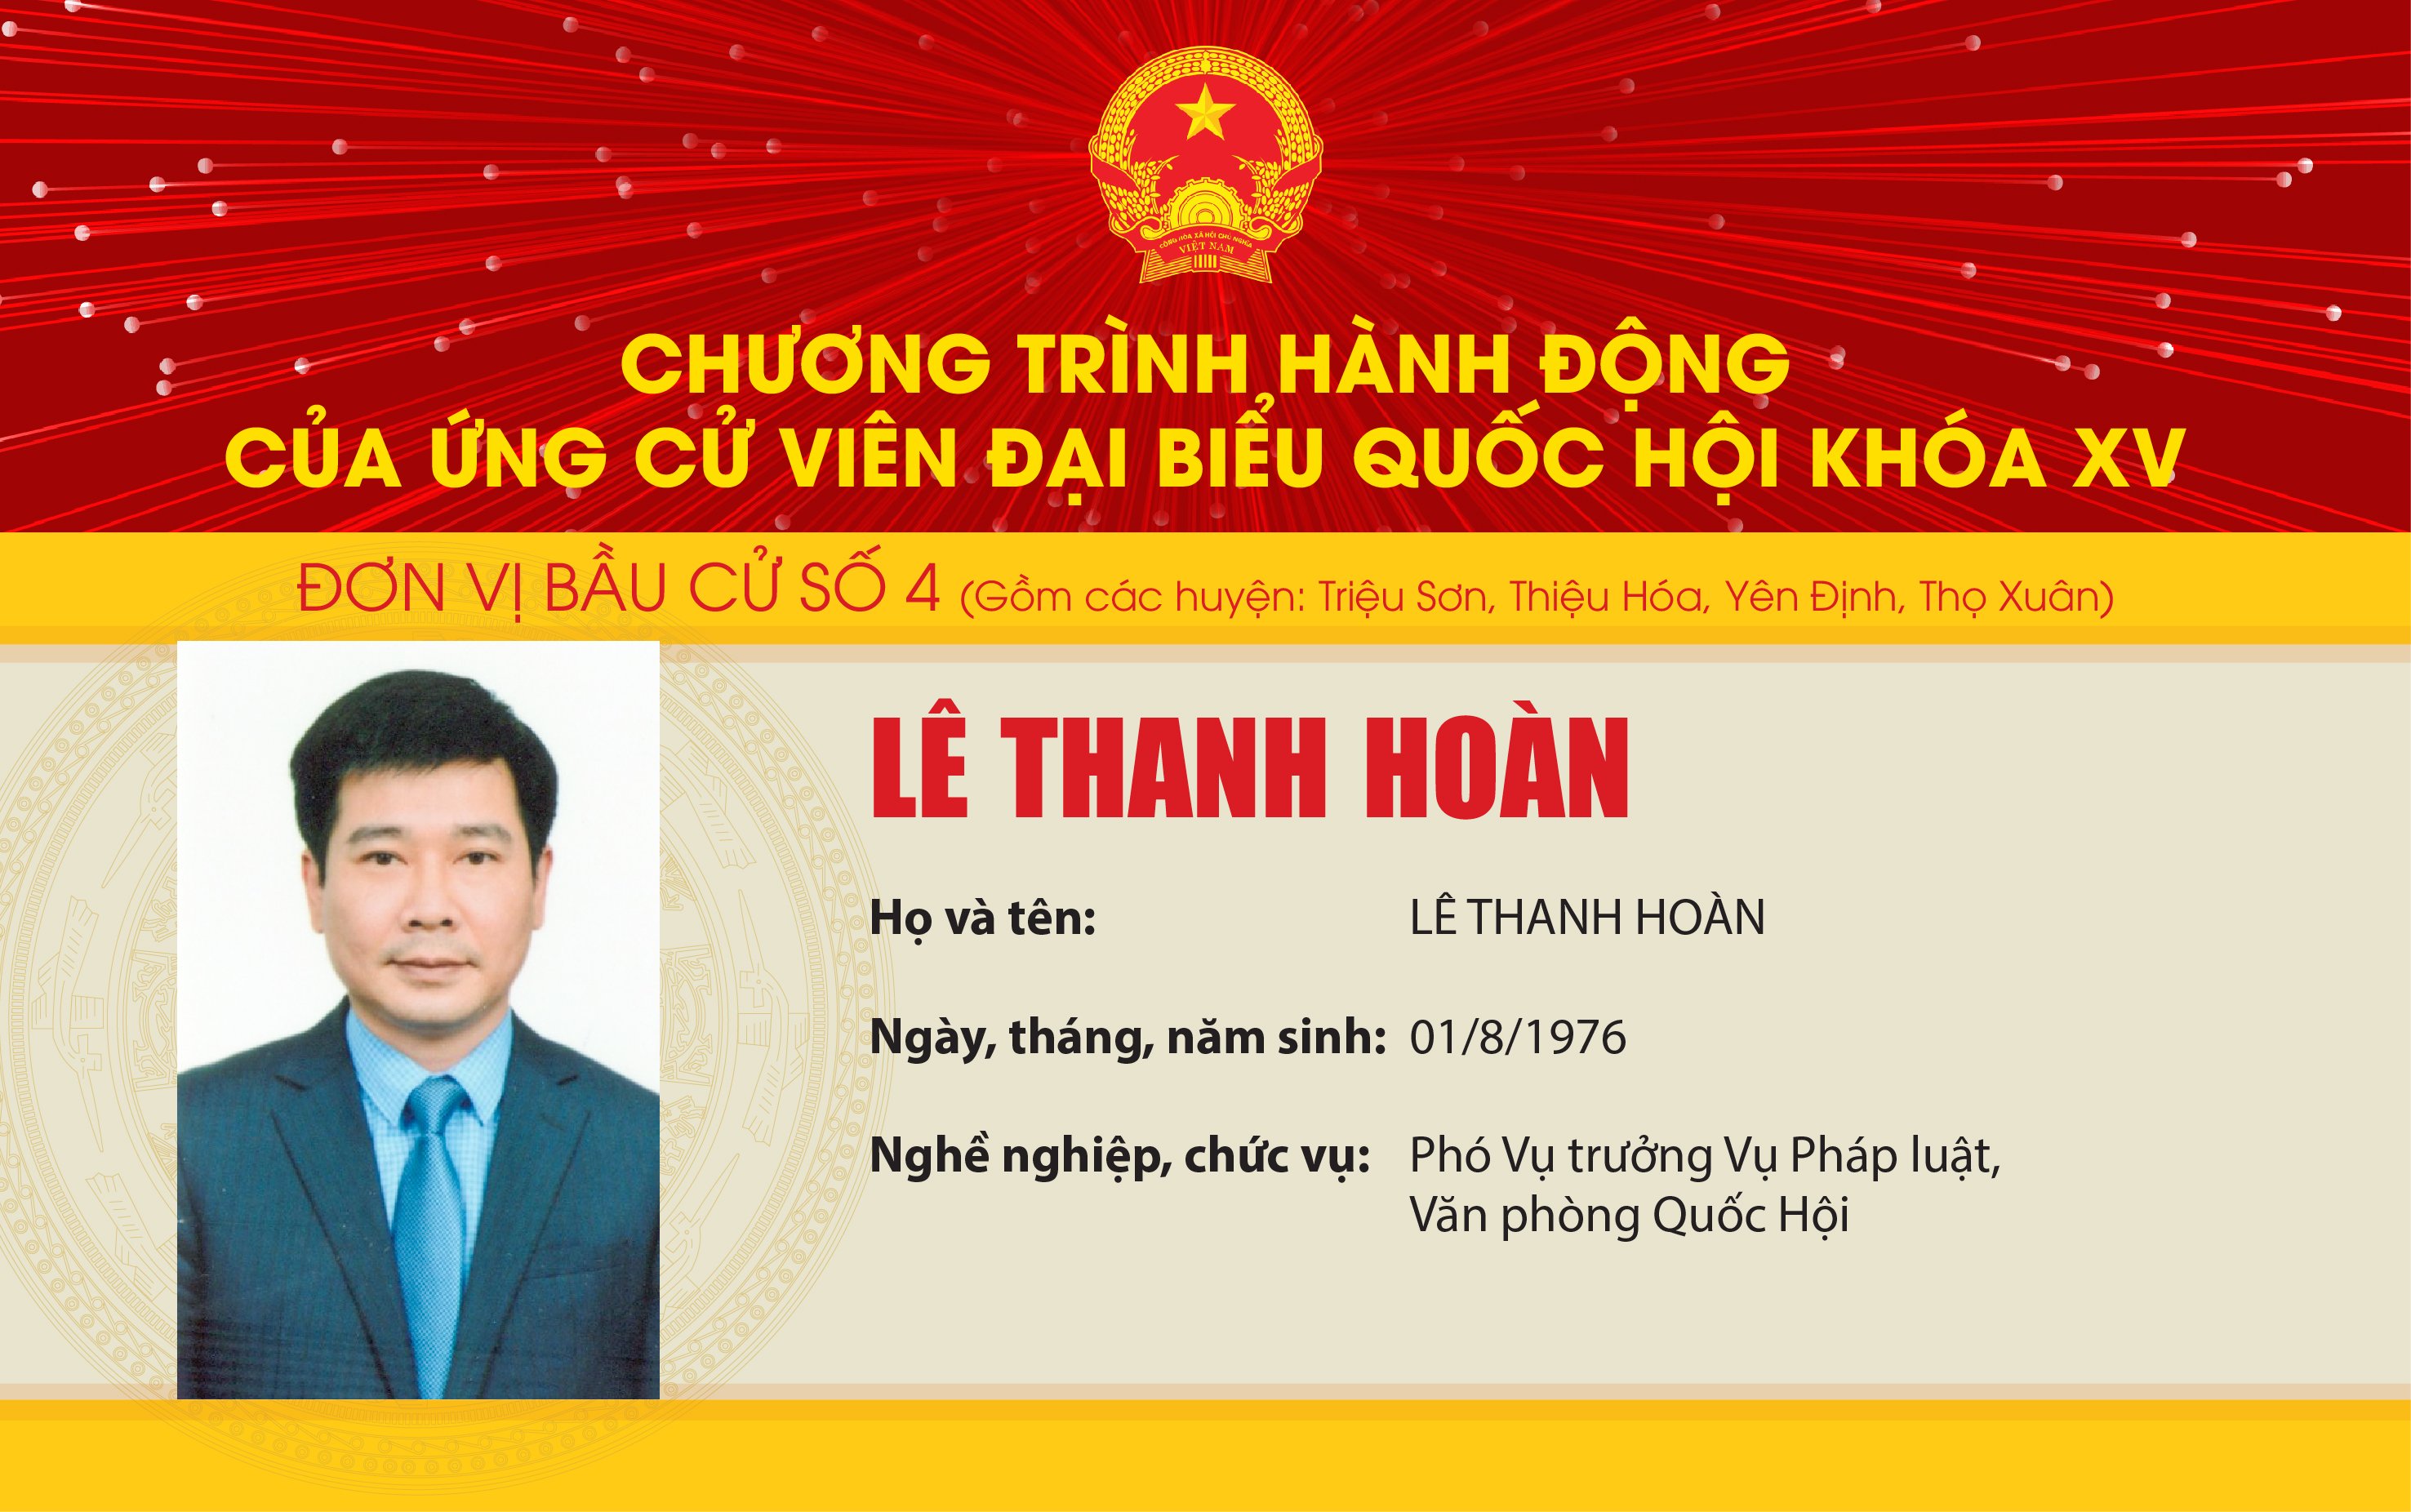 Chương trình hành động của Ứng cử viên Đại biểu Quốc hội khóa XV Lê Thanh Hoàn - Đơn vị bầu cử số 4